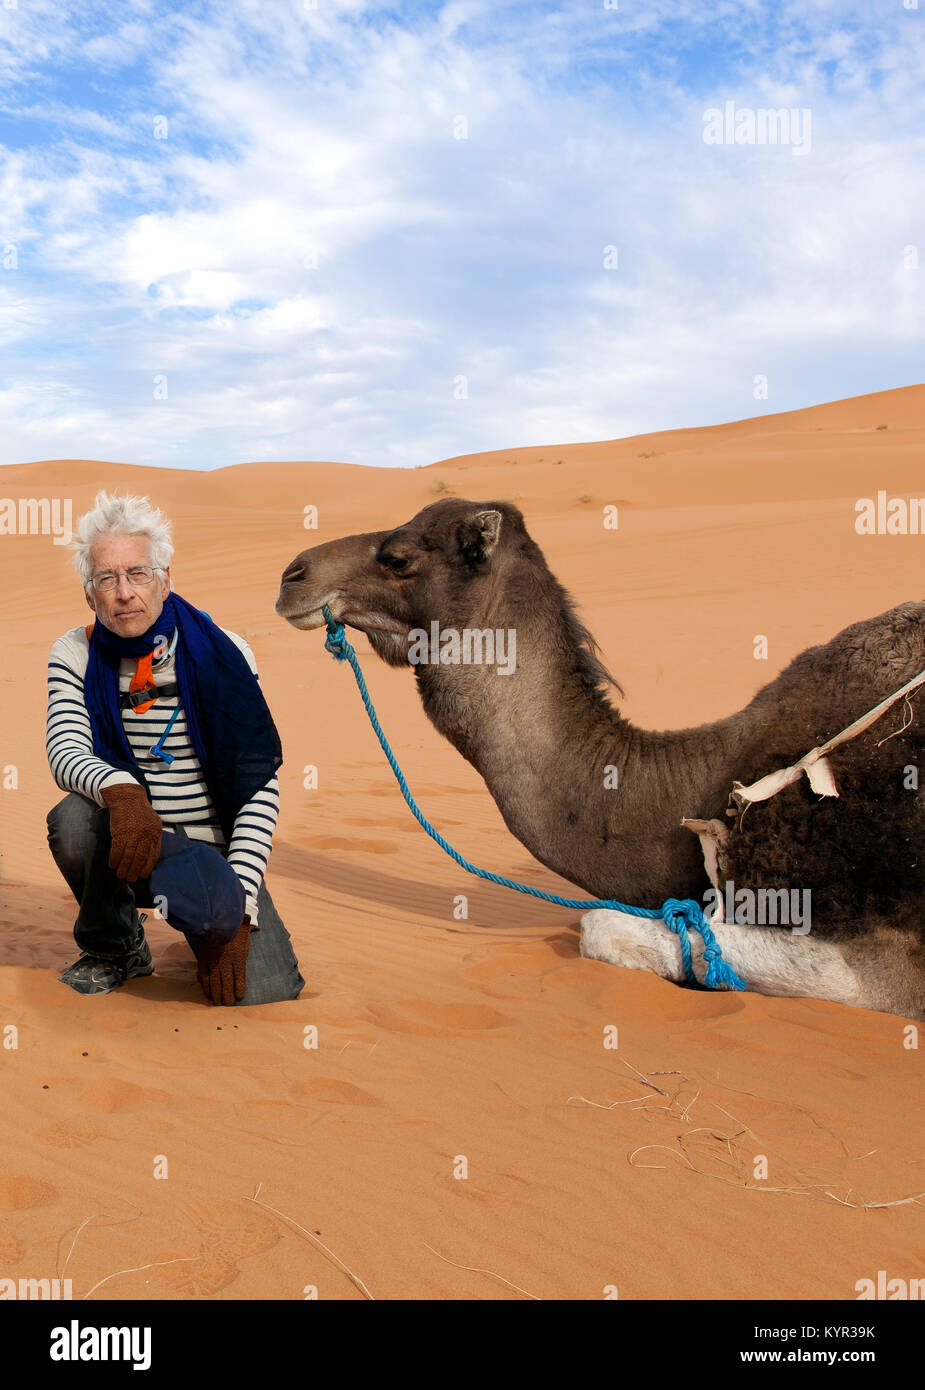 Älterer Mann auf ein Abenteuer Reisen Reise nach Marokko. Auf dem Sand mit einem Kamel in der Wüste Sahara dargestellt. Thema aktiven Ruhestand. Stockfoto